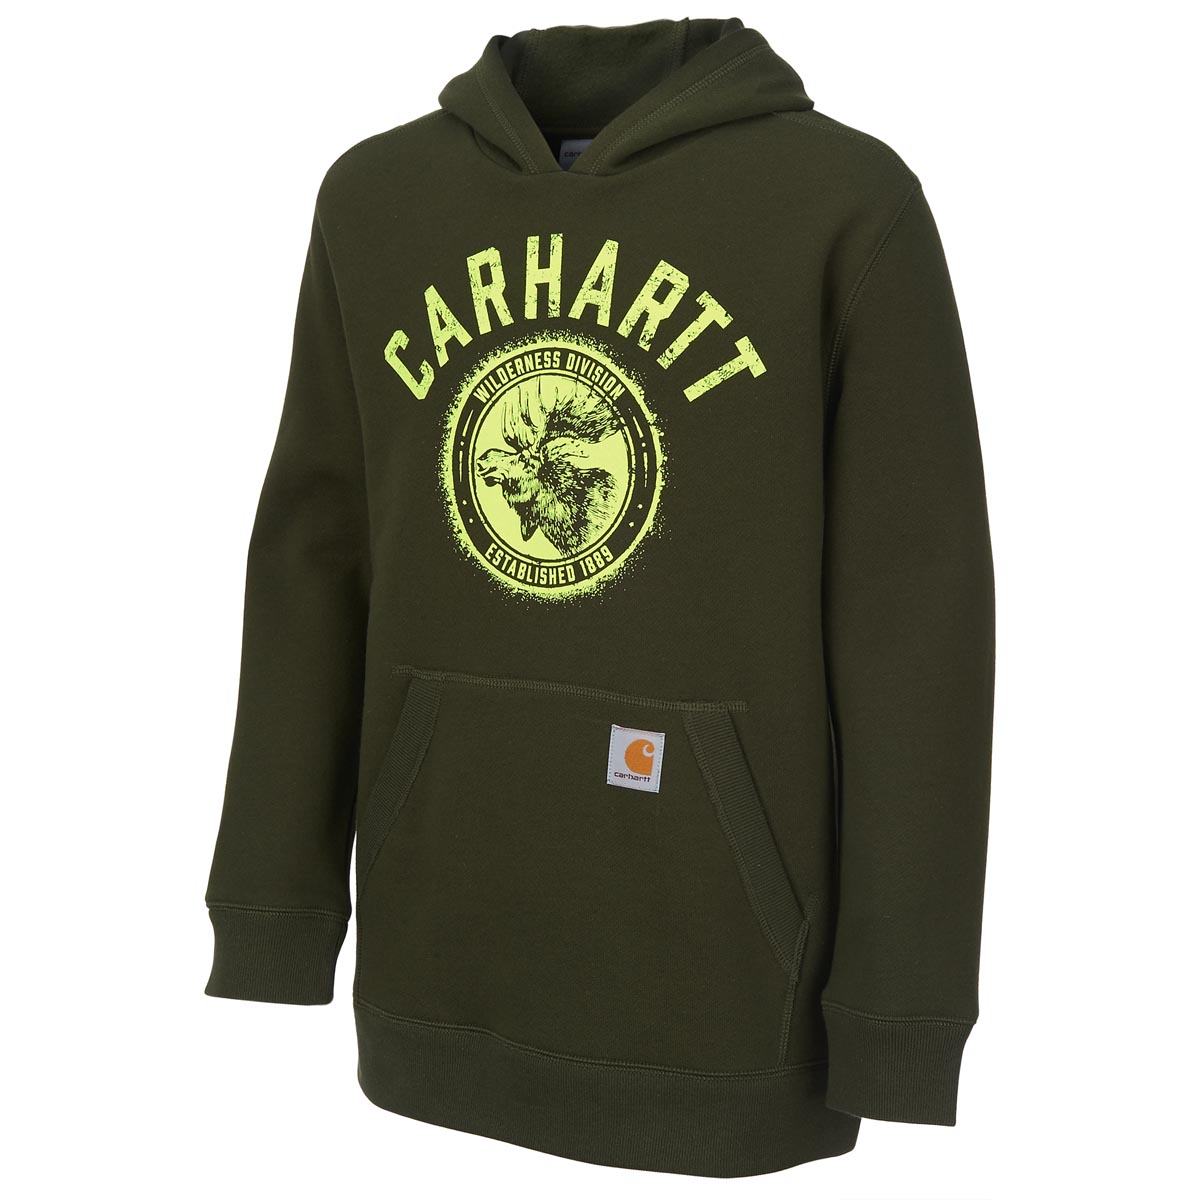 Carhartt Boys Wilderness Division Sweatshirt